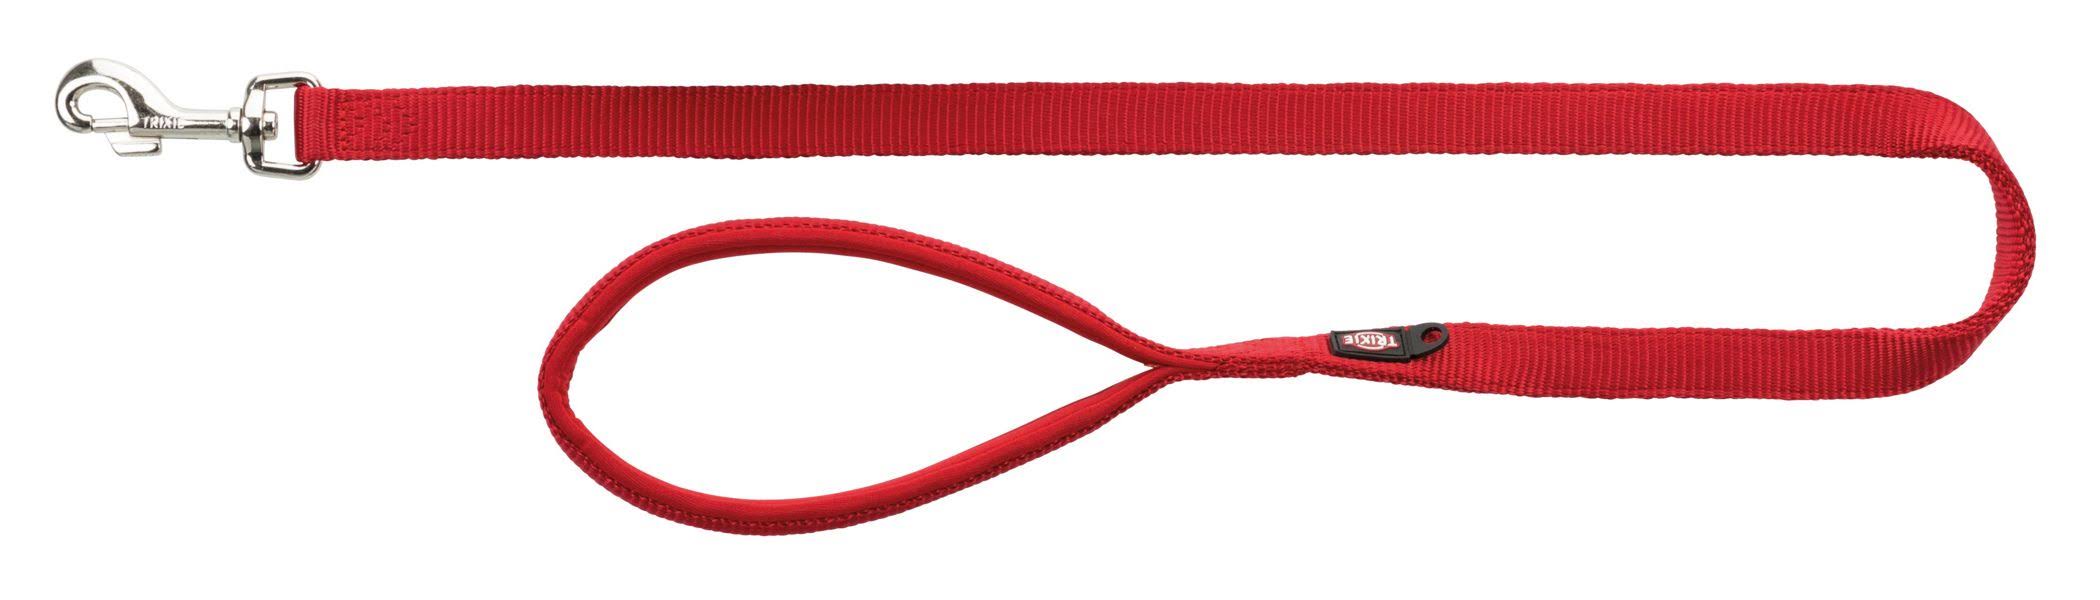 Trixie Premium Leash Extra Long Red - Medium-Large